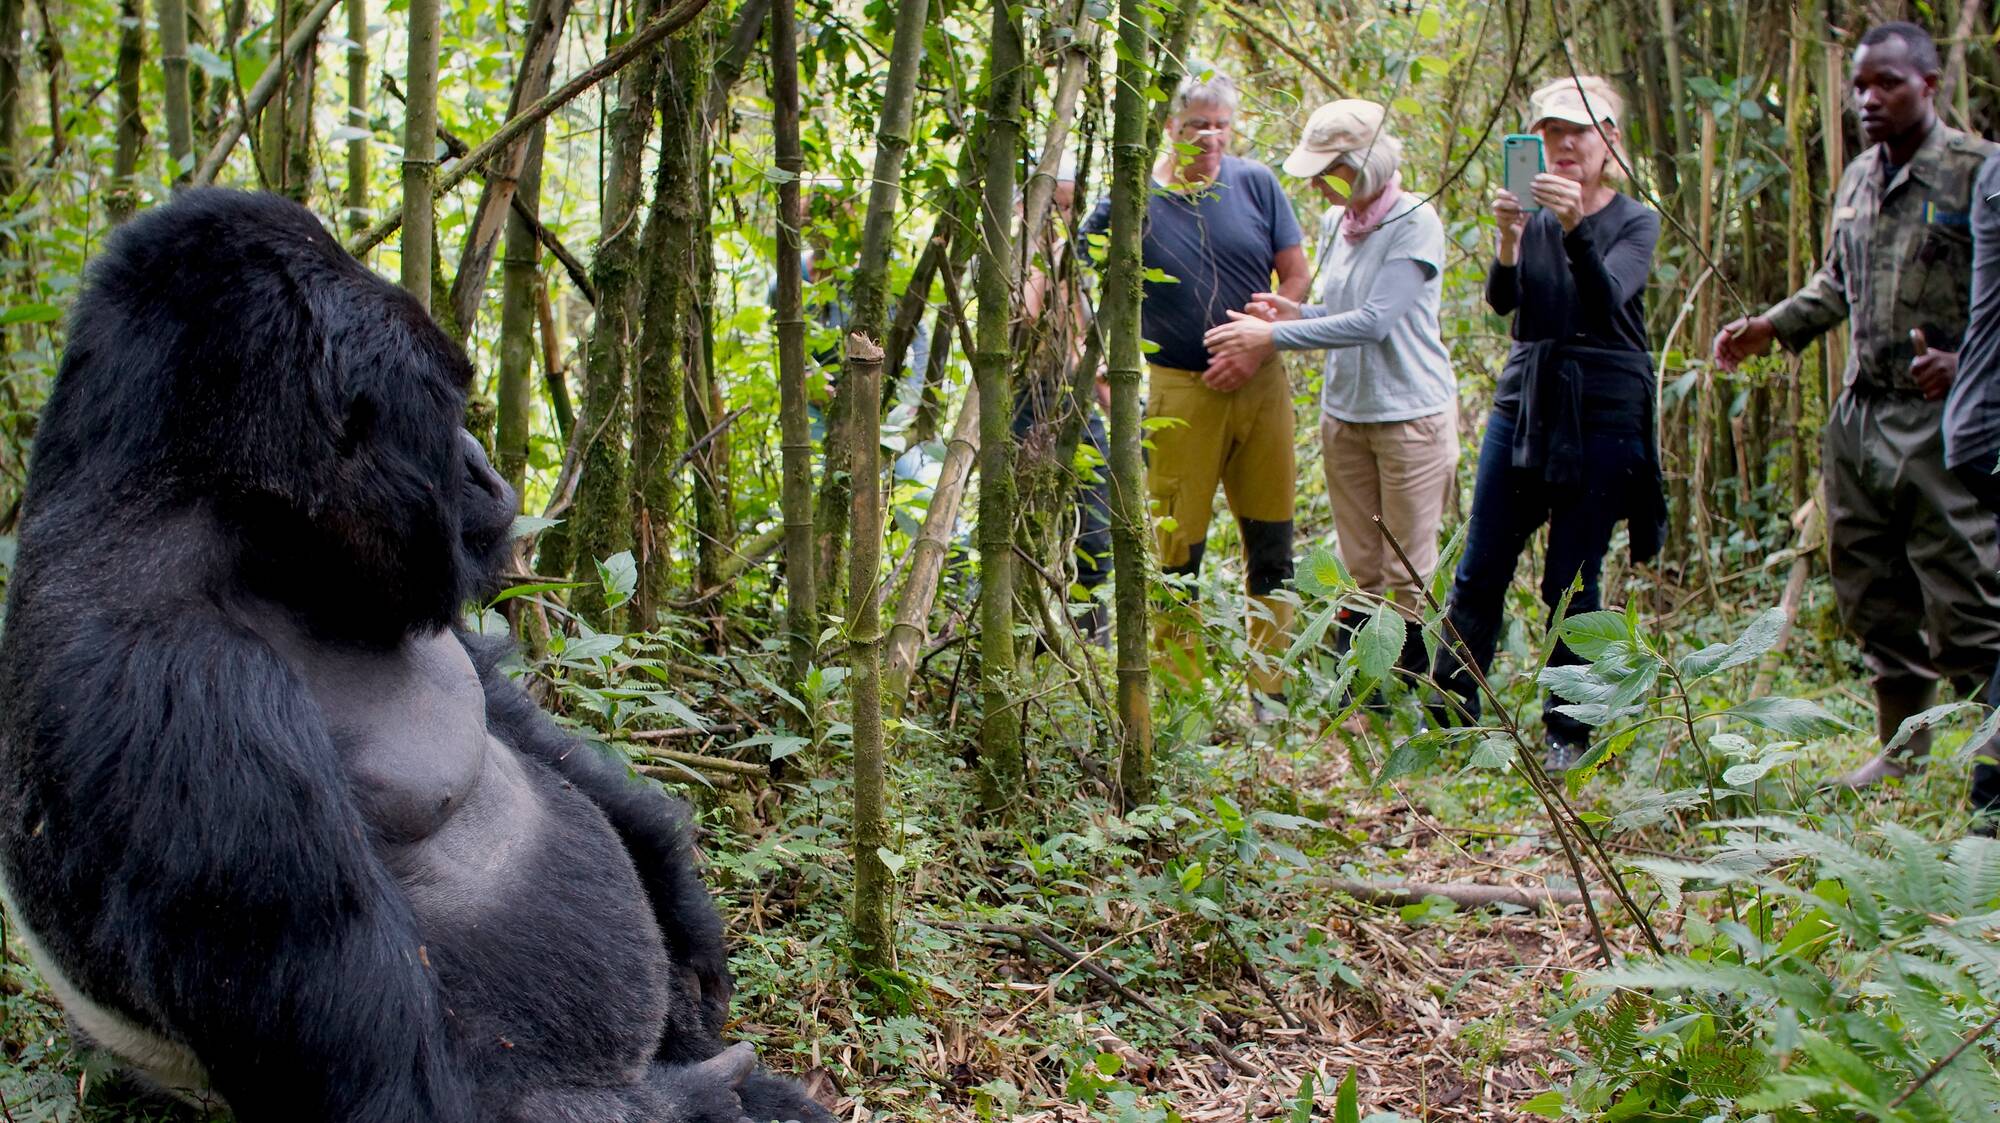 Gorilla Trekking in Rwanda During Covid-19